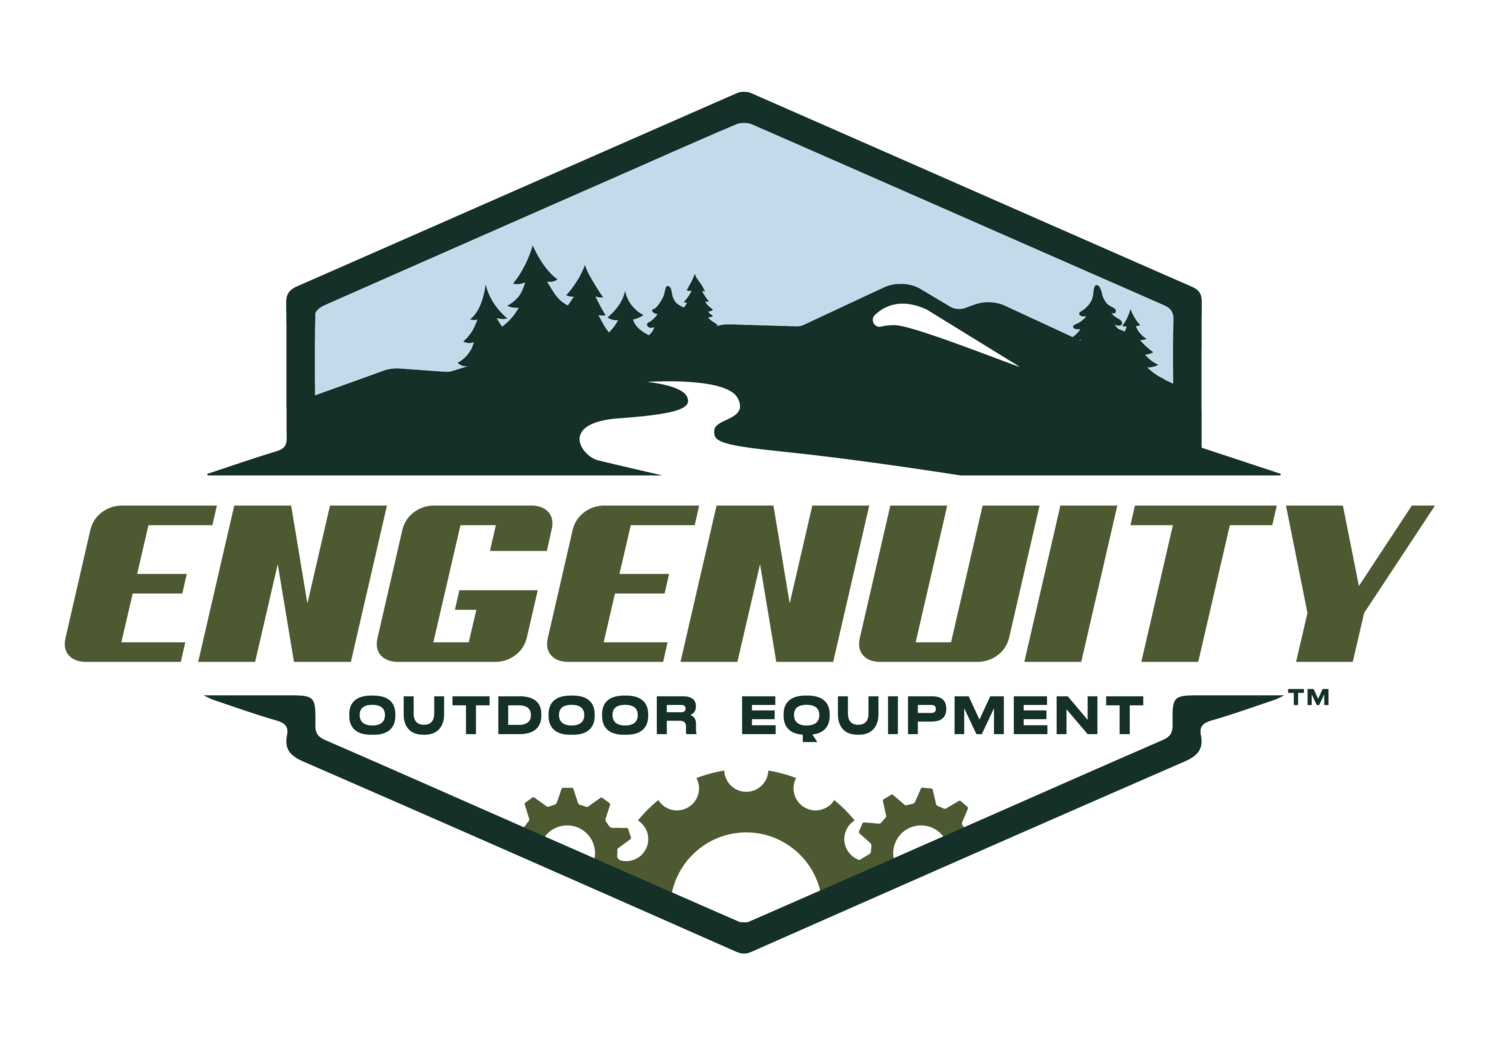 Engenuity Outdoor Equipment